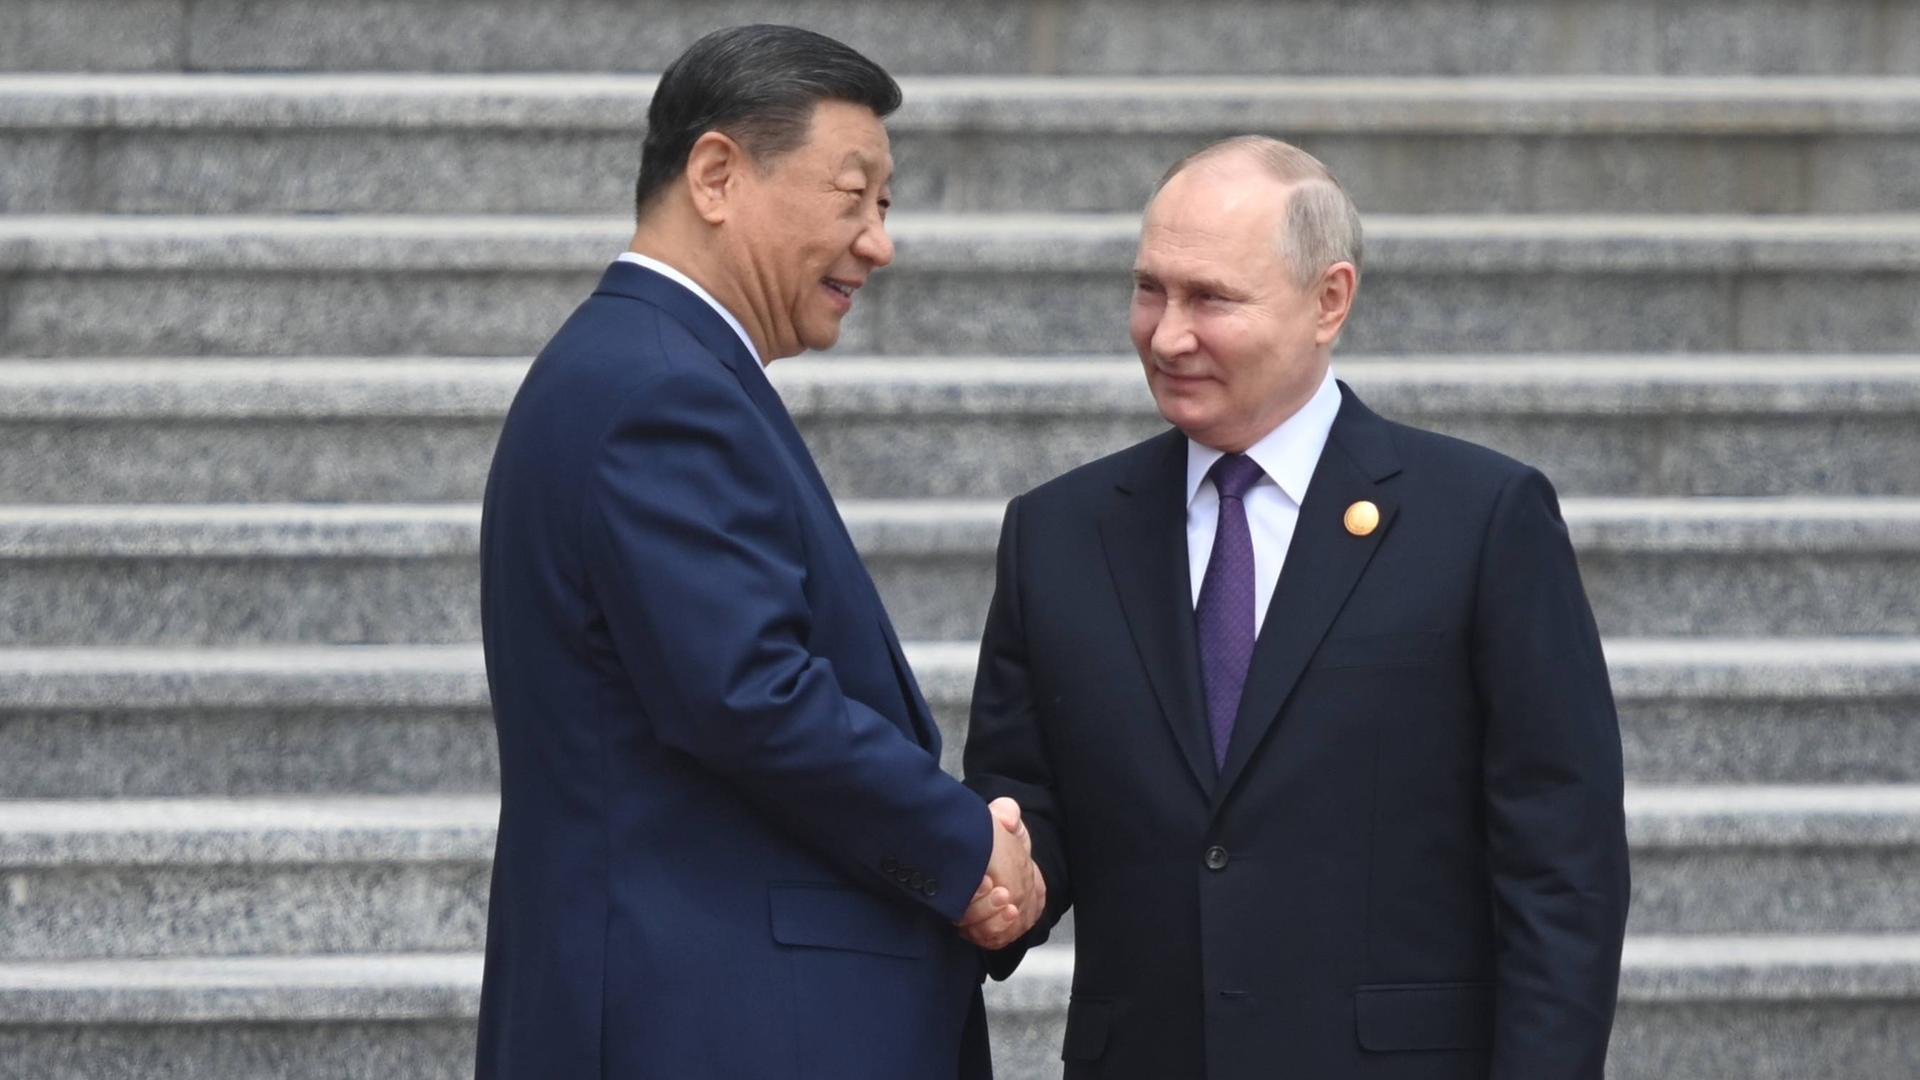 Der russische Präsident Vladimir Putin und der chinesische Präsident Xi Jinping schütteln sich die Hand. Sie stehen auf einer grauen Treppe.